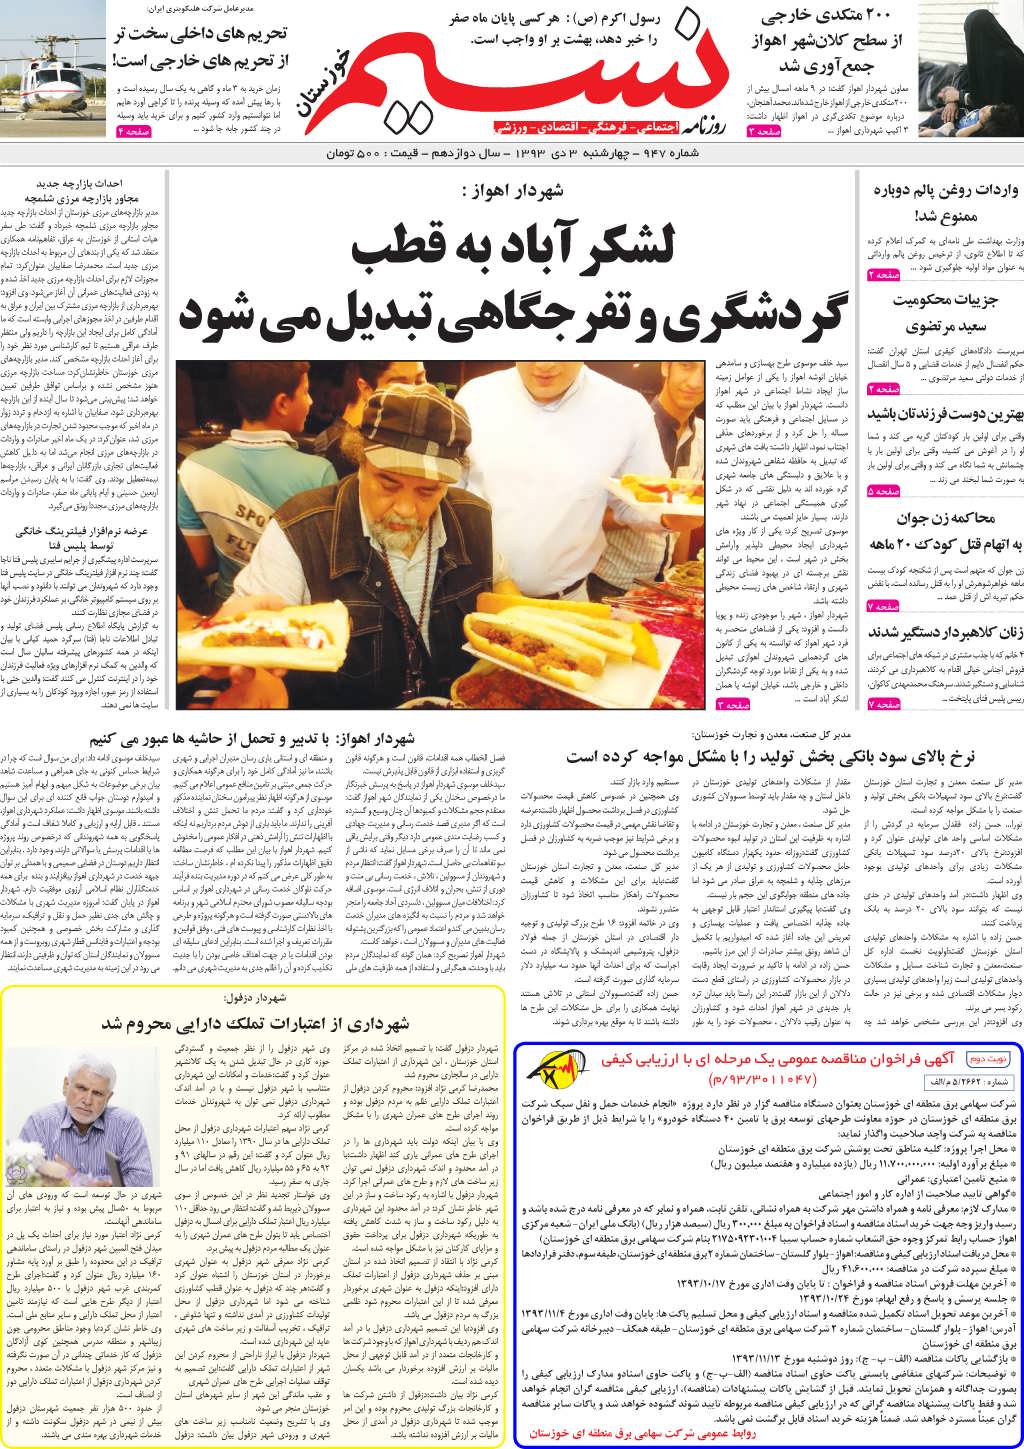 صفحه اصلی روزنامه نسیم شماره 947 